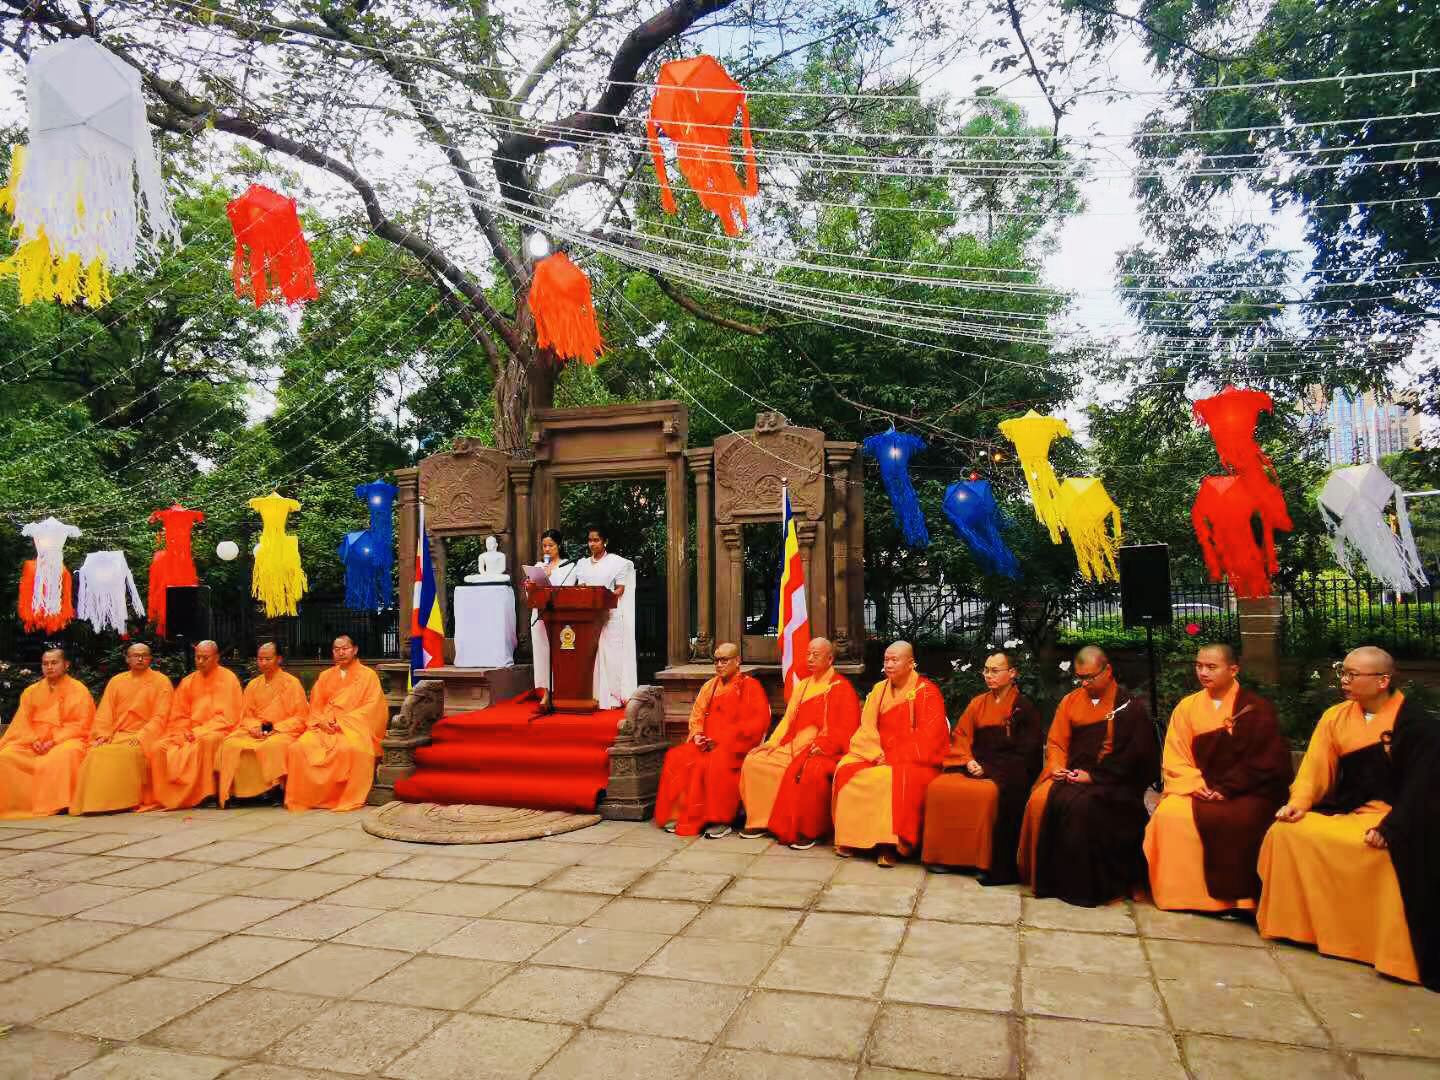 Sri Lanka Embassy in Beijing Celebrates Vesak 2021